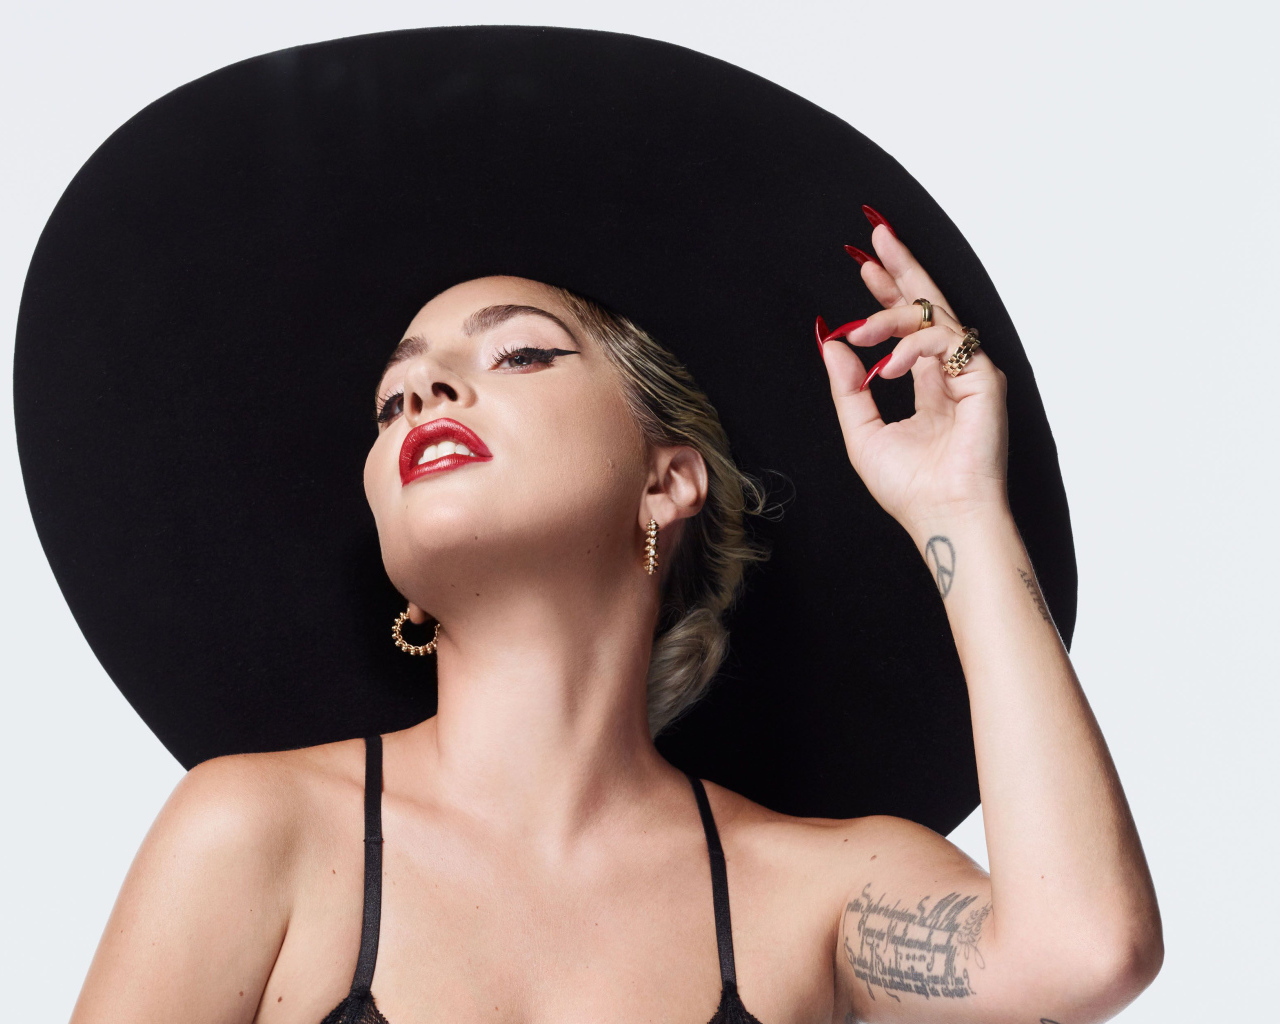 Певица Леди Гага в большой черной шляпе на белом фоне